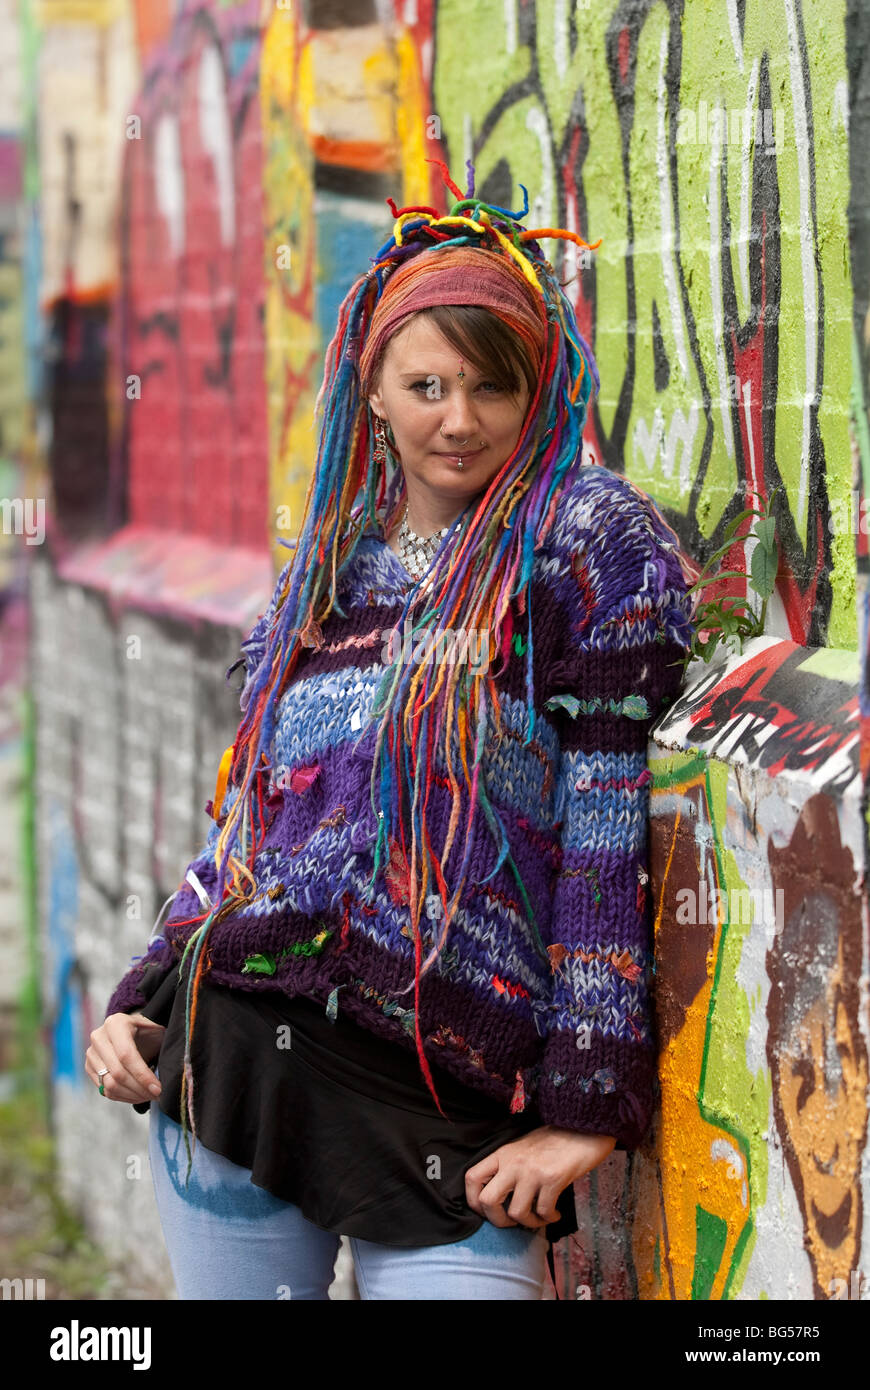 Junge Frau Hippie mit Multi coloriertes Haar und alternative Kleidung  vollständig Modell freigegeben Stockfotografie - Alamy